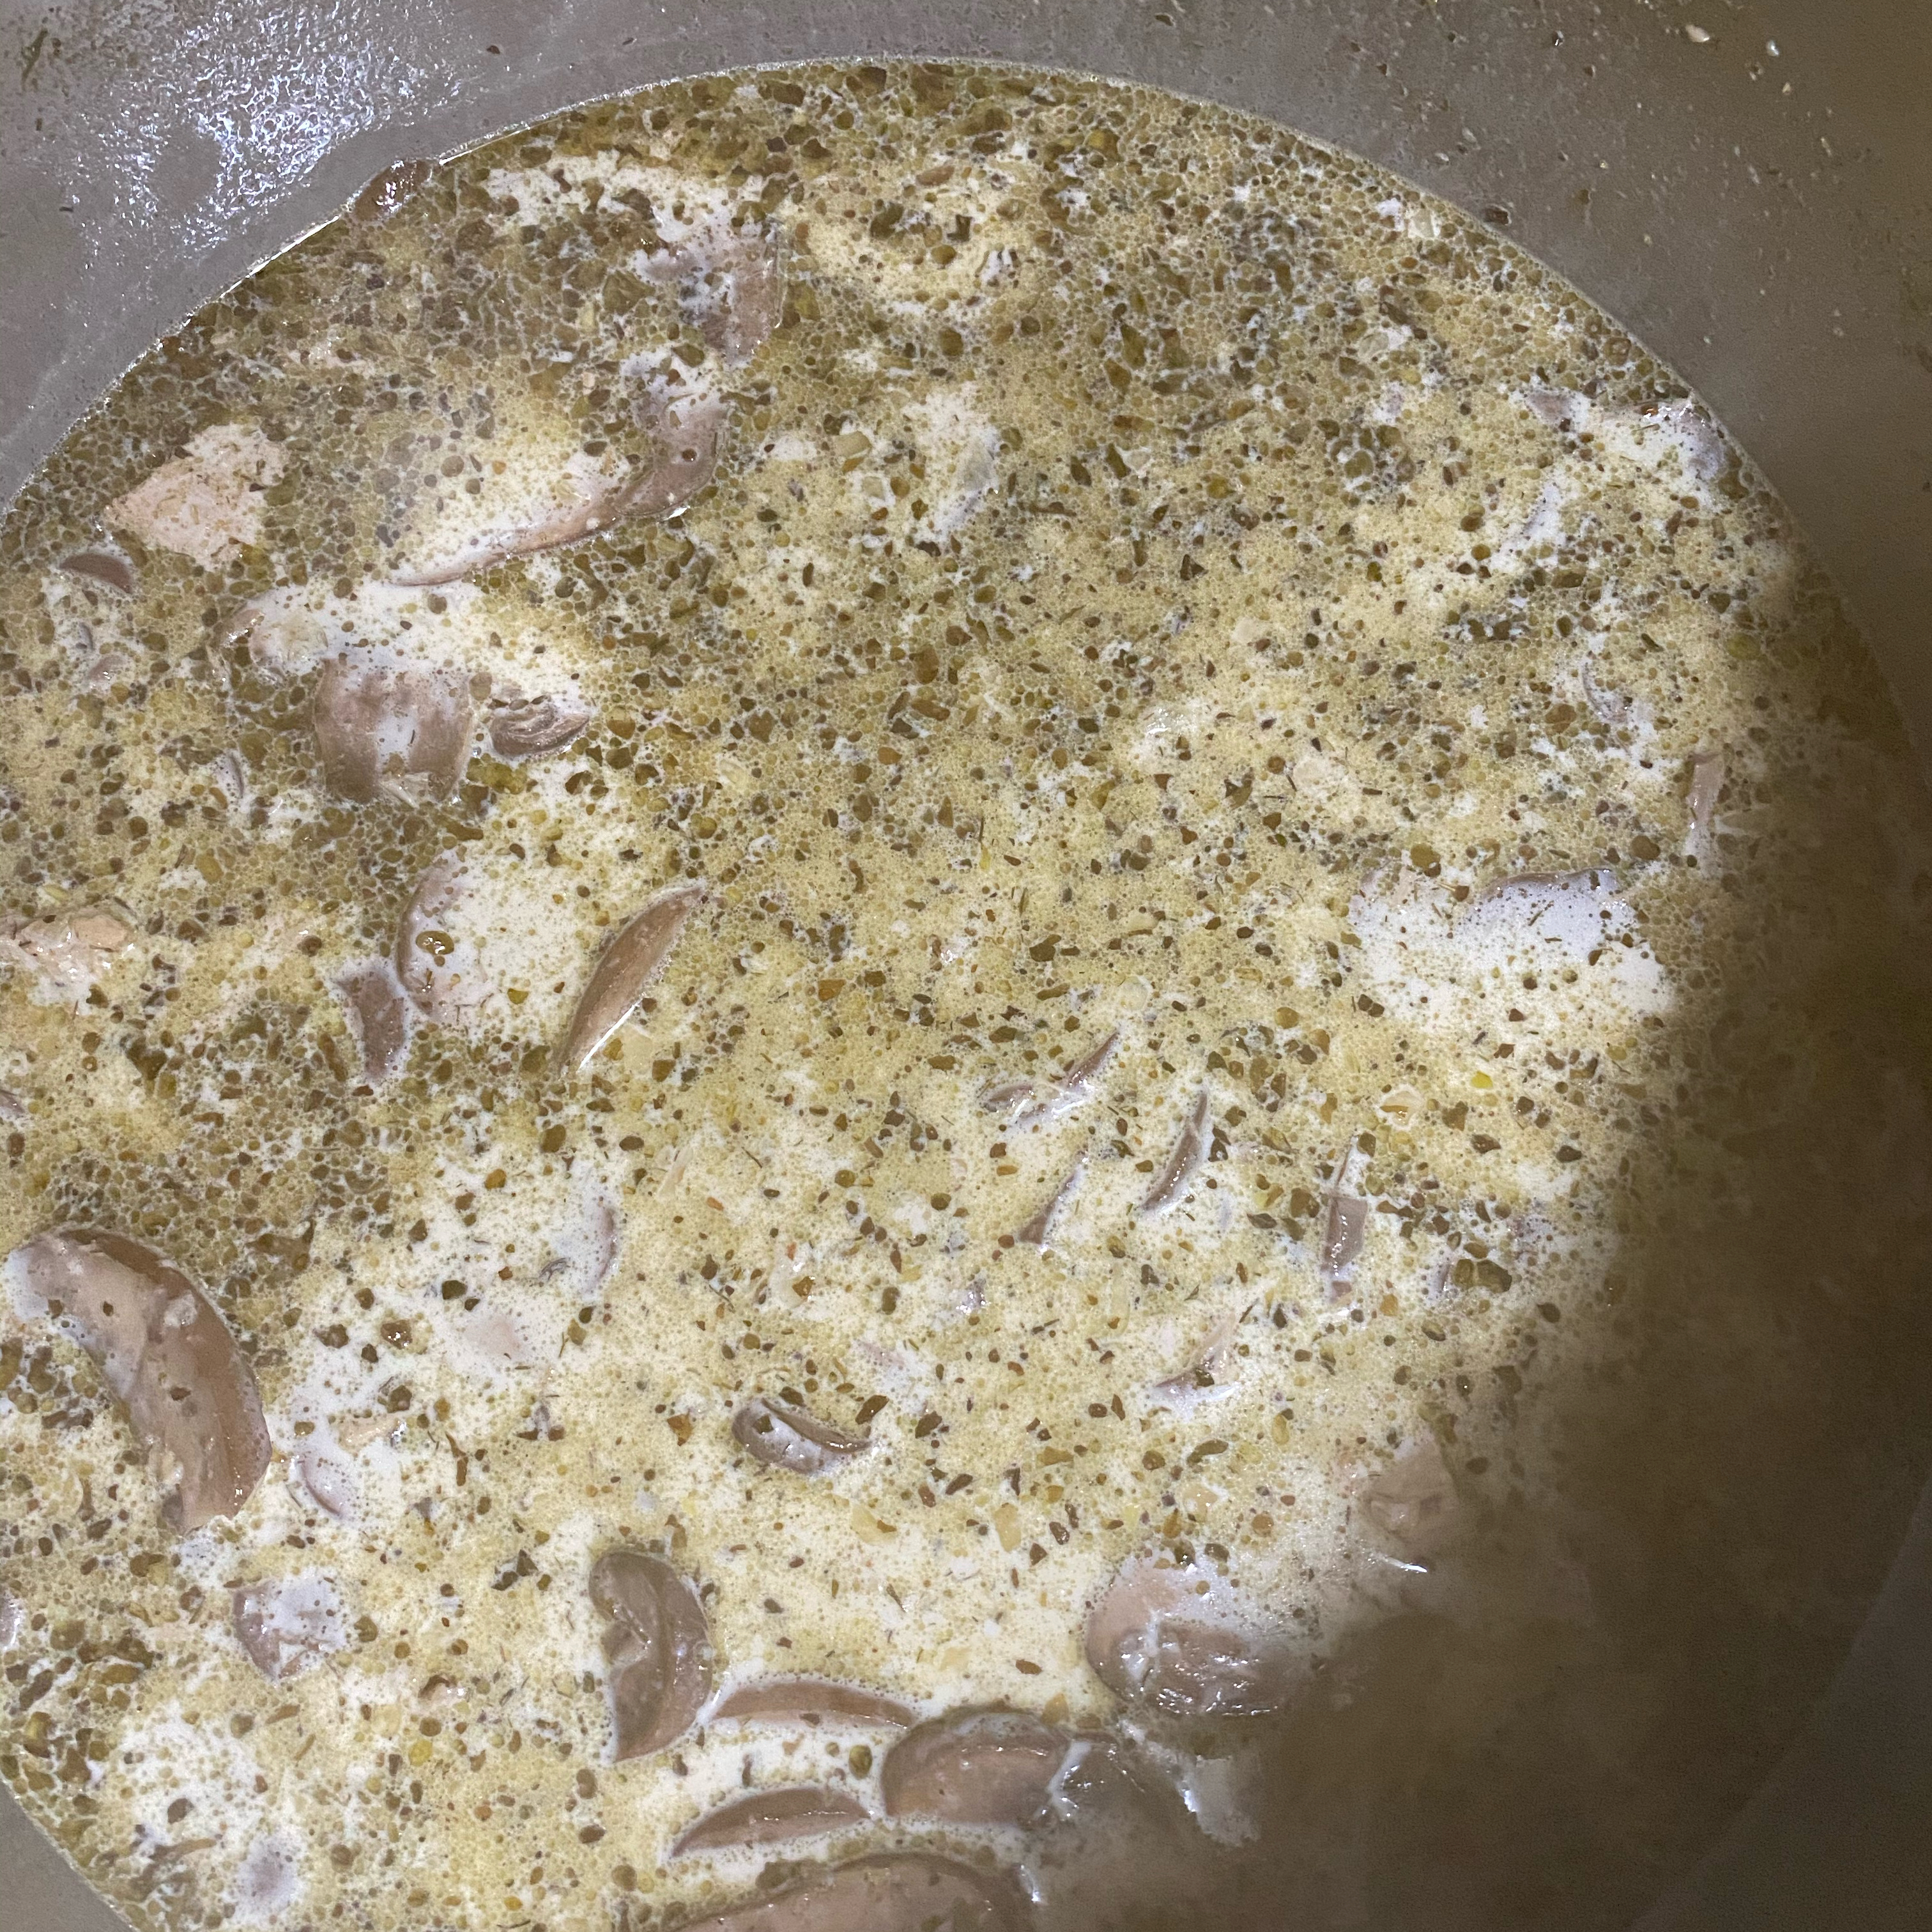 Low-Carb Chicken and Mushroom Soup ldavis178gmailcom